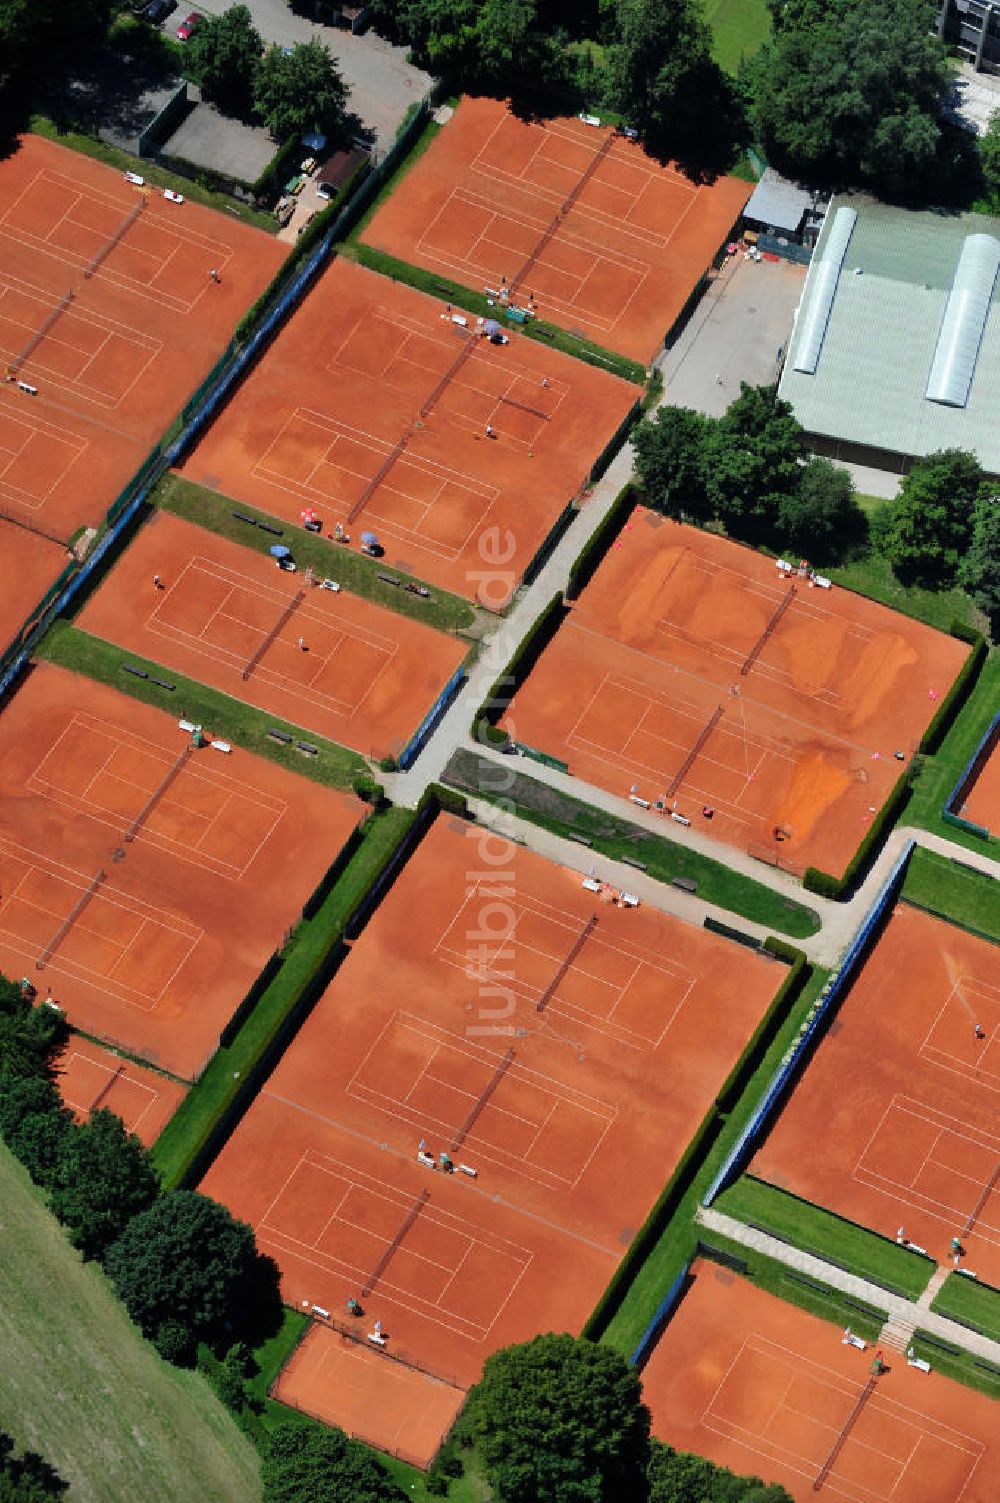 München aus der Vogelperspektive: Tennisanlage an der Willi-Graf-Straße in München